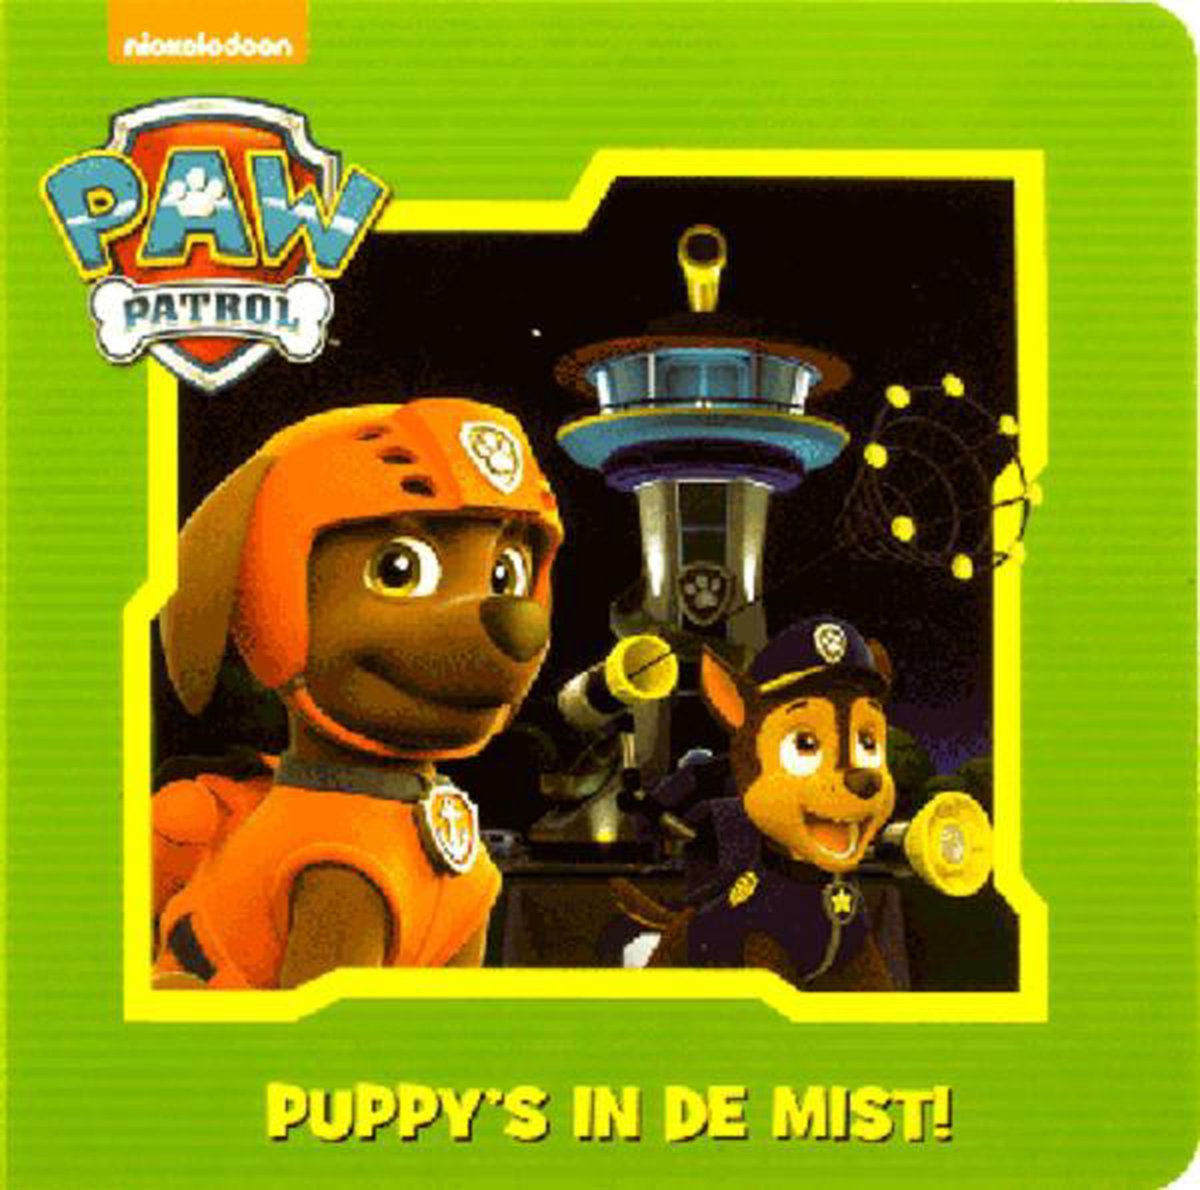 Paw Patrol Zuma- Puppy's in de mist - karton boekje - Nickelodeon